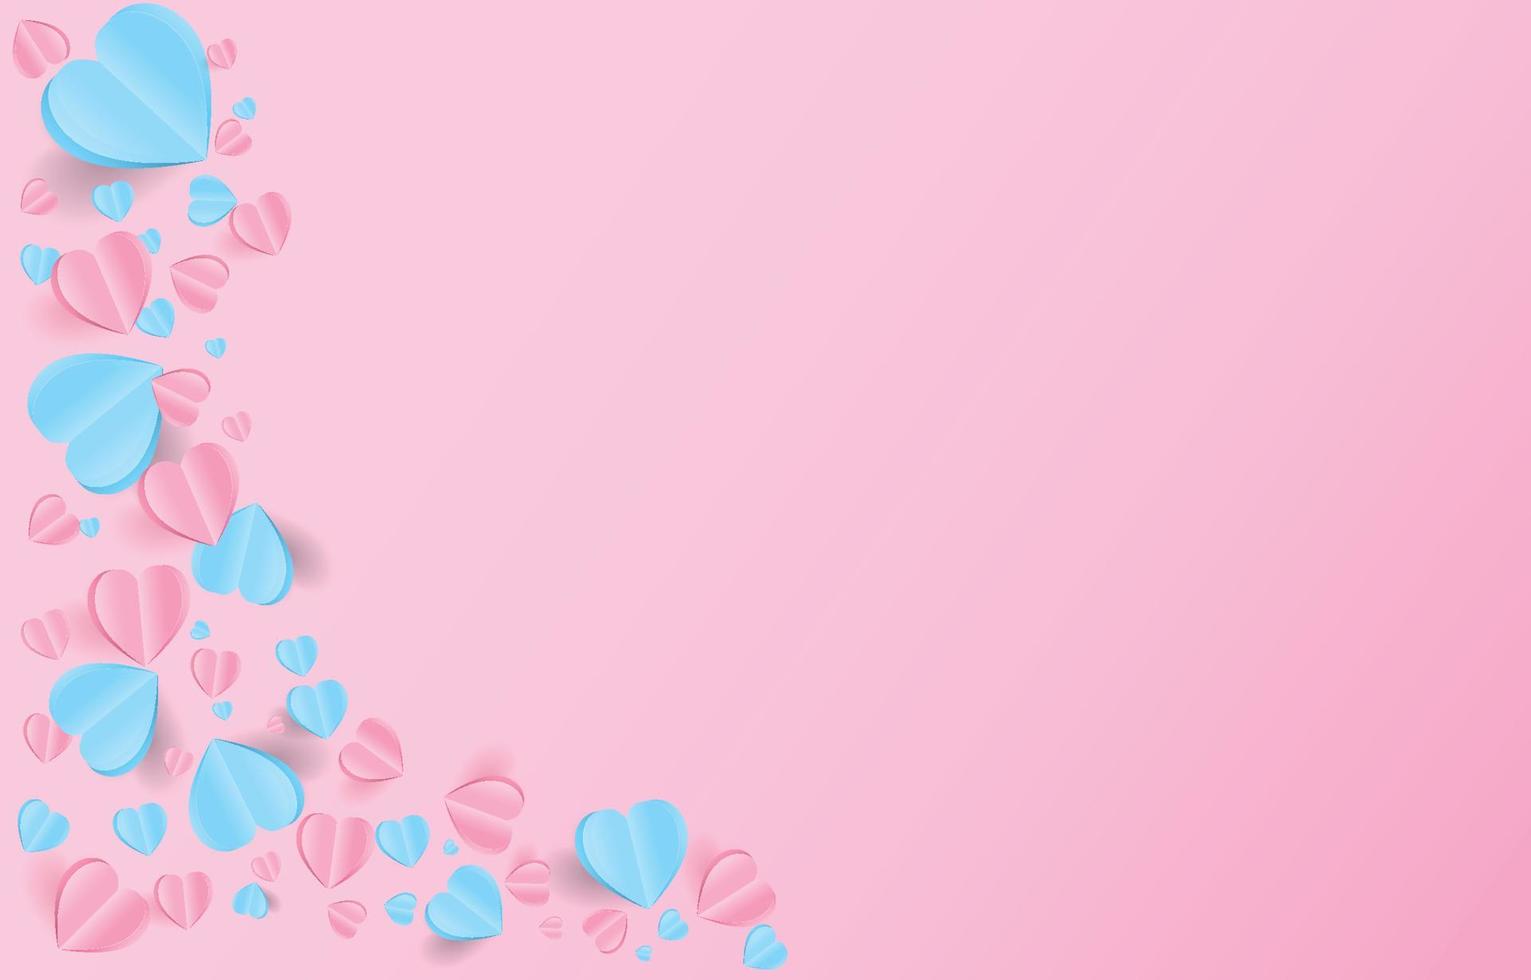 pappersskurna element i form av hjärtat flyger på rosa och söt bakgrund. vektor symboler för kärlek för glad alla hjärtans dag, födelsedag gratulationskort design.